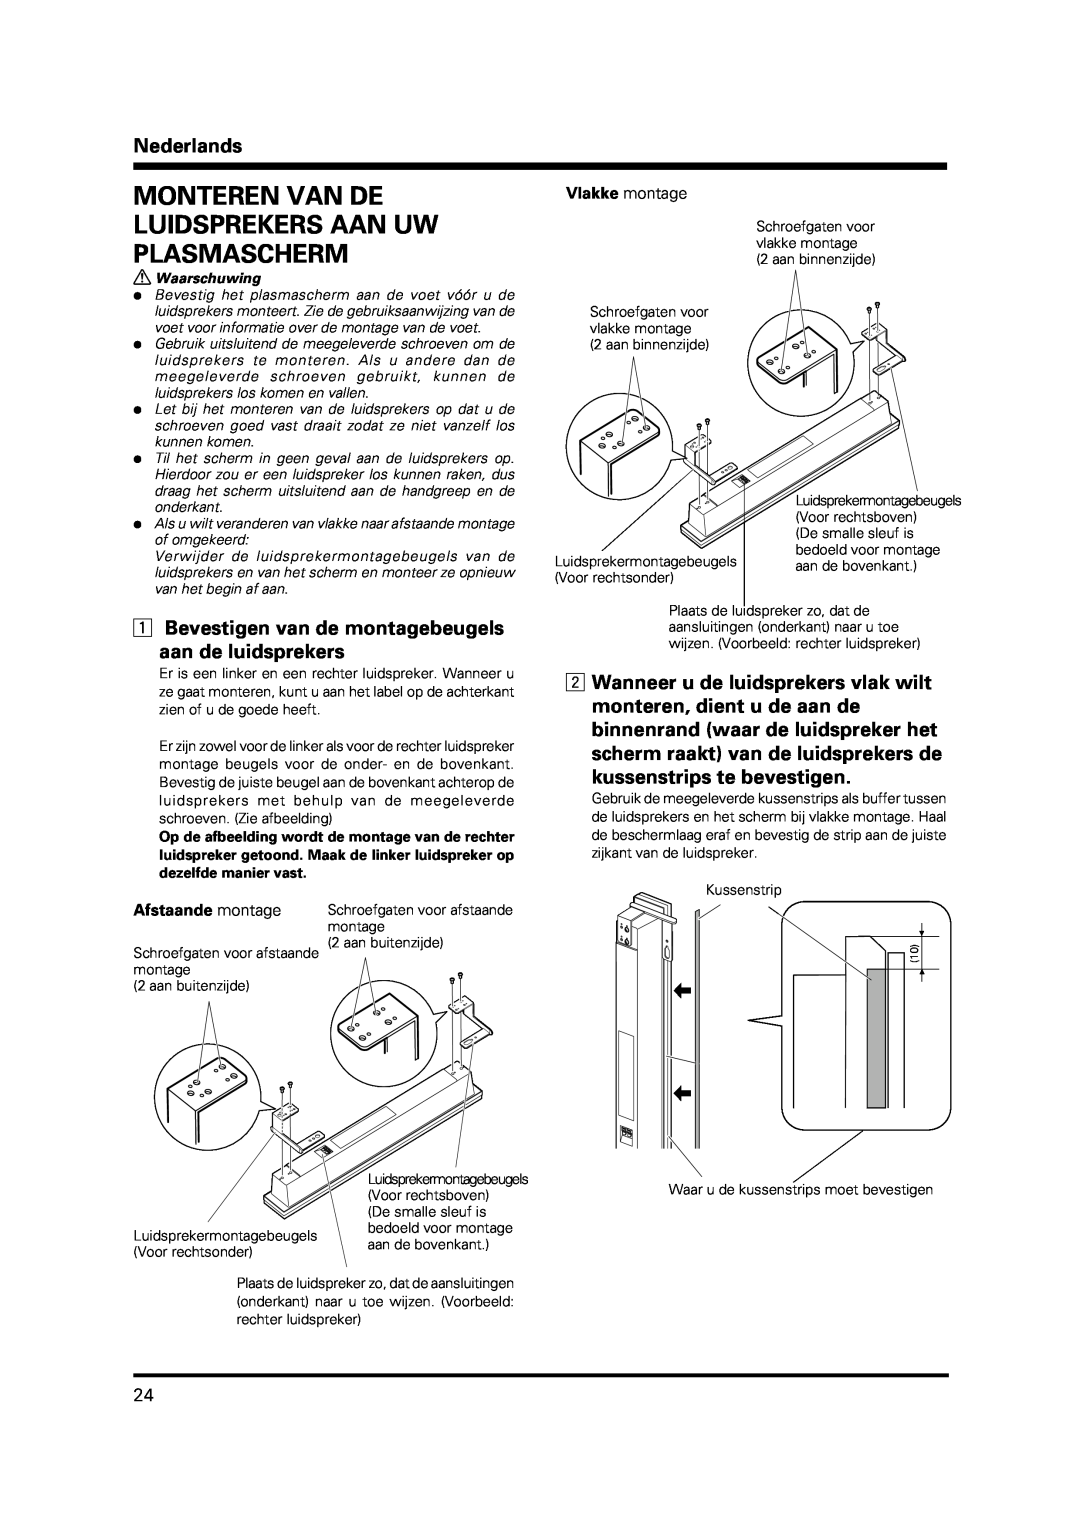 Pioneer PDP-S37 manual Monteren Van De Luidsprekers Aan Uw Plasmascherm, Nederlands, 1Bevestigen van de montagebeugels 